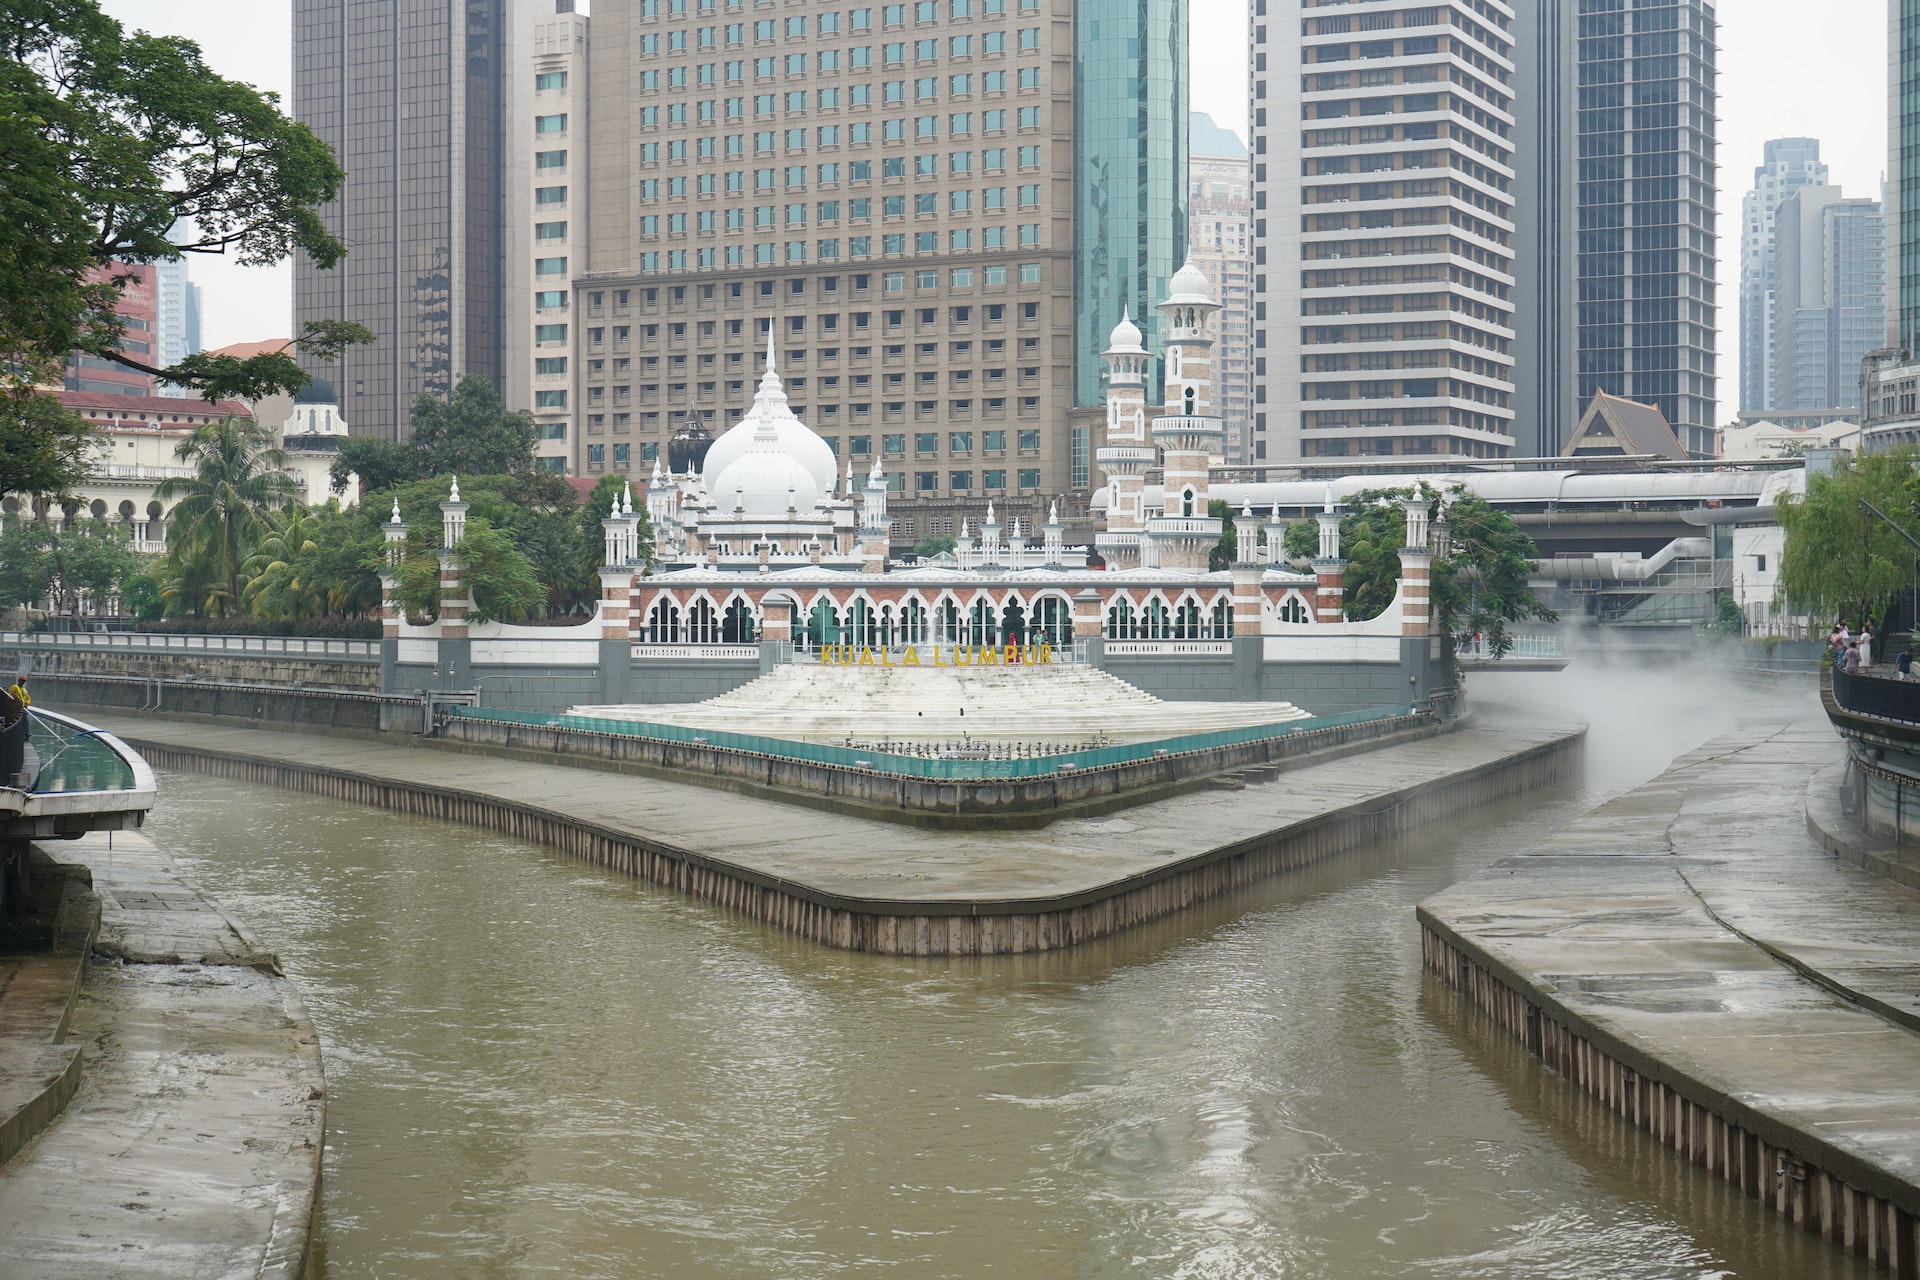 "River of Life" near Merdeka Square in Kuala Lumpur, Malaysia